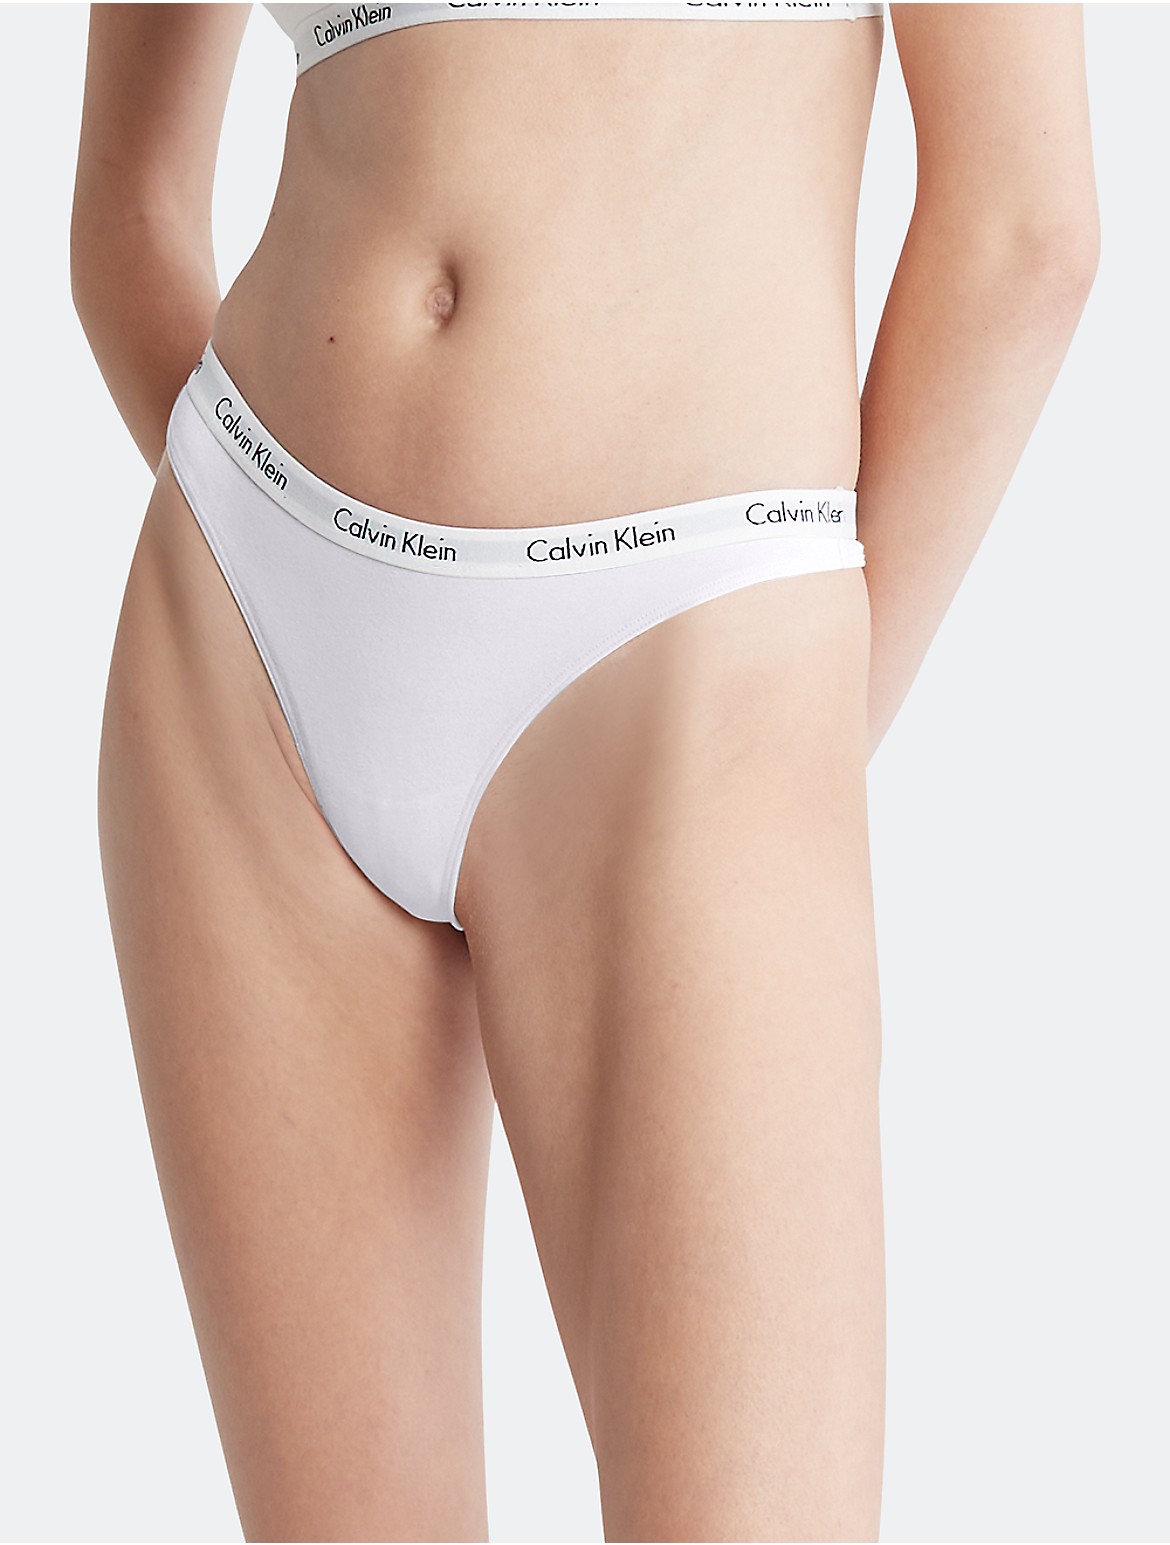 Calvin Klein Women's Carousel Logo Cotton Thong - White - XS